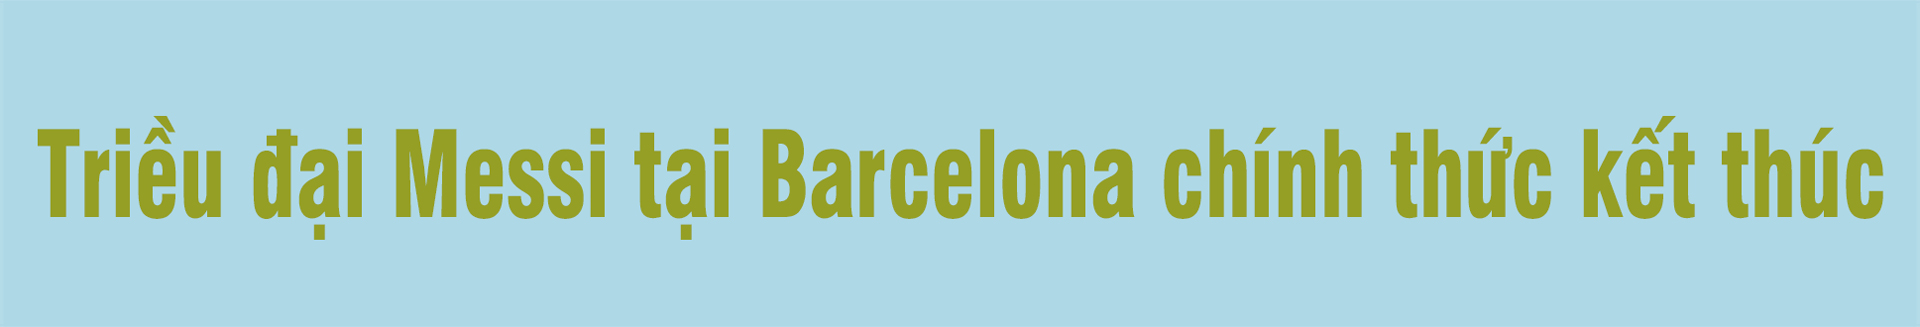 Messi rời Barcelona: Sự sụp đổ của một triều đại và miền đất mới ngập tiền - 2